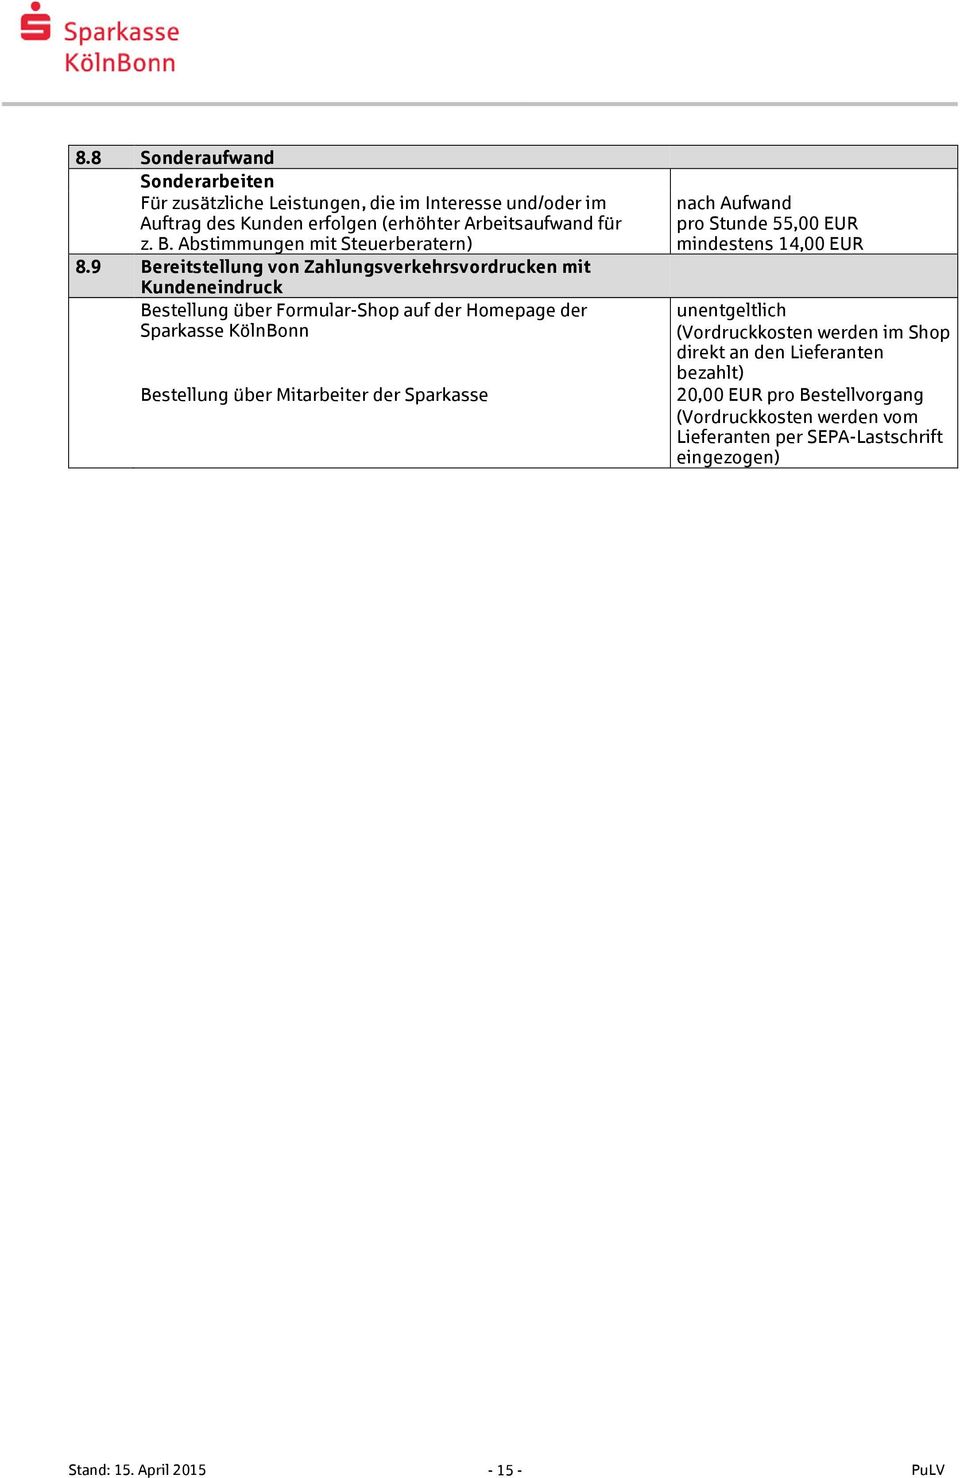 9 Bereitstellung von Zahlungsverkehrsvordrucken mit Kundeneindruck Bestellung über Formular-Shop auf der Homepage der Sparkasse KölnBonn Bestellung